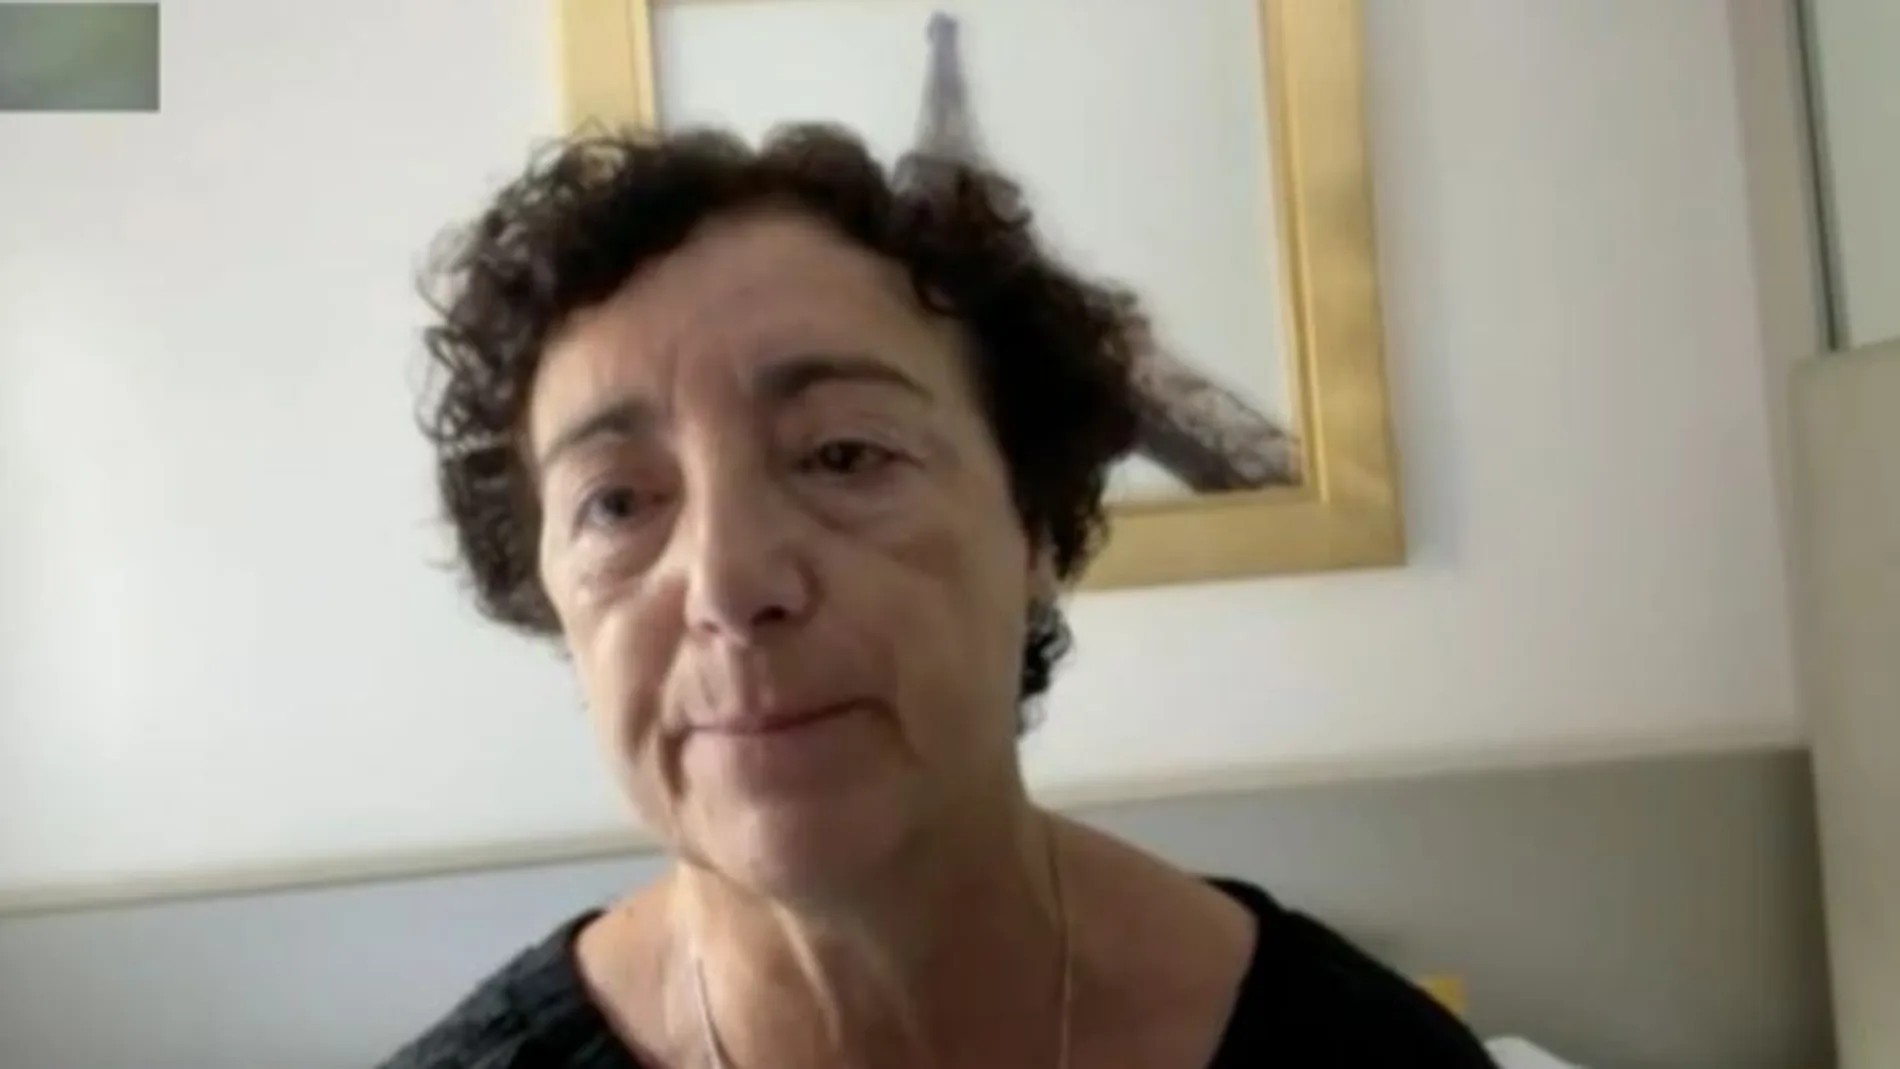 Cristina Garrido, madre español fallecido atentados París